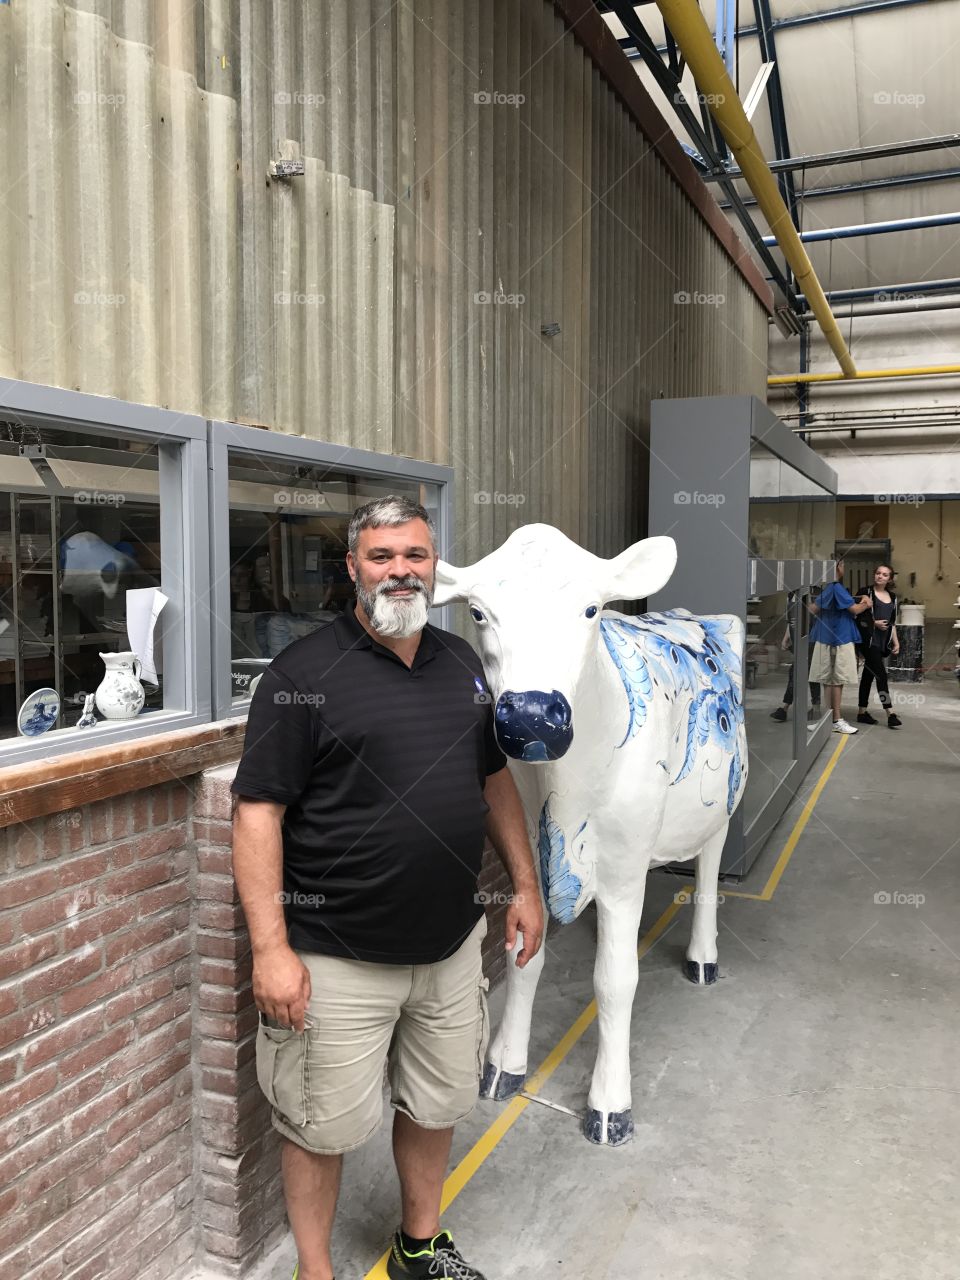 Royal Delft 
Cow
Me
Factory 
Blue
